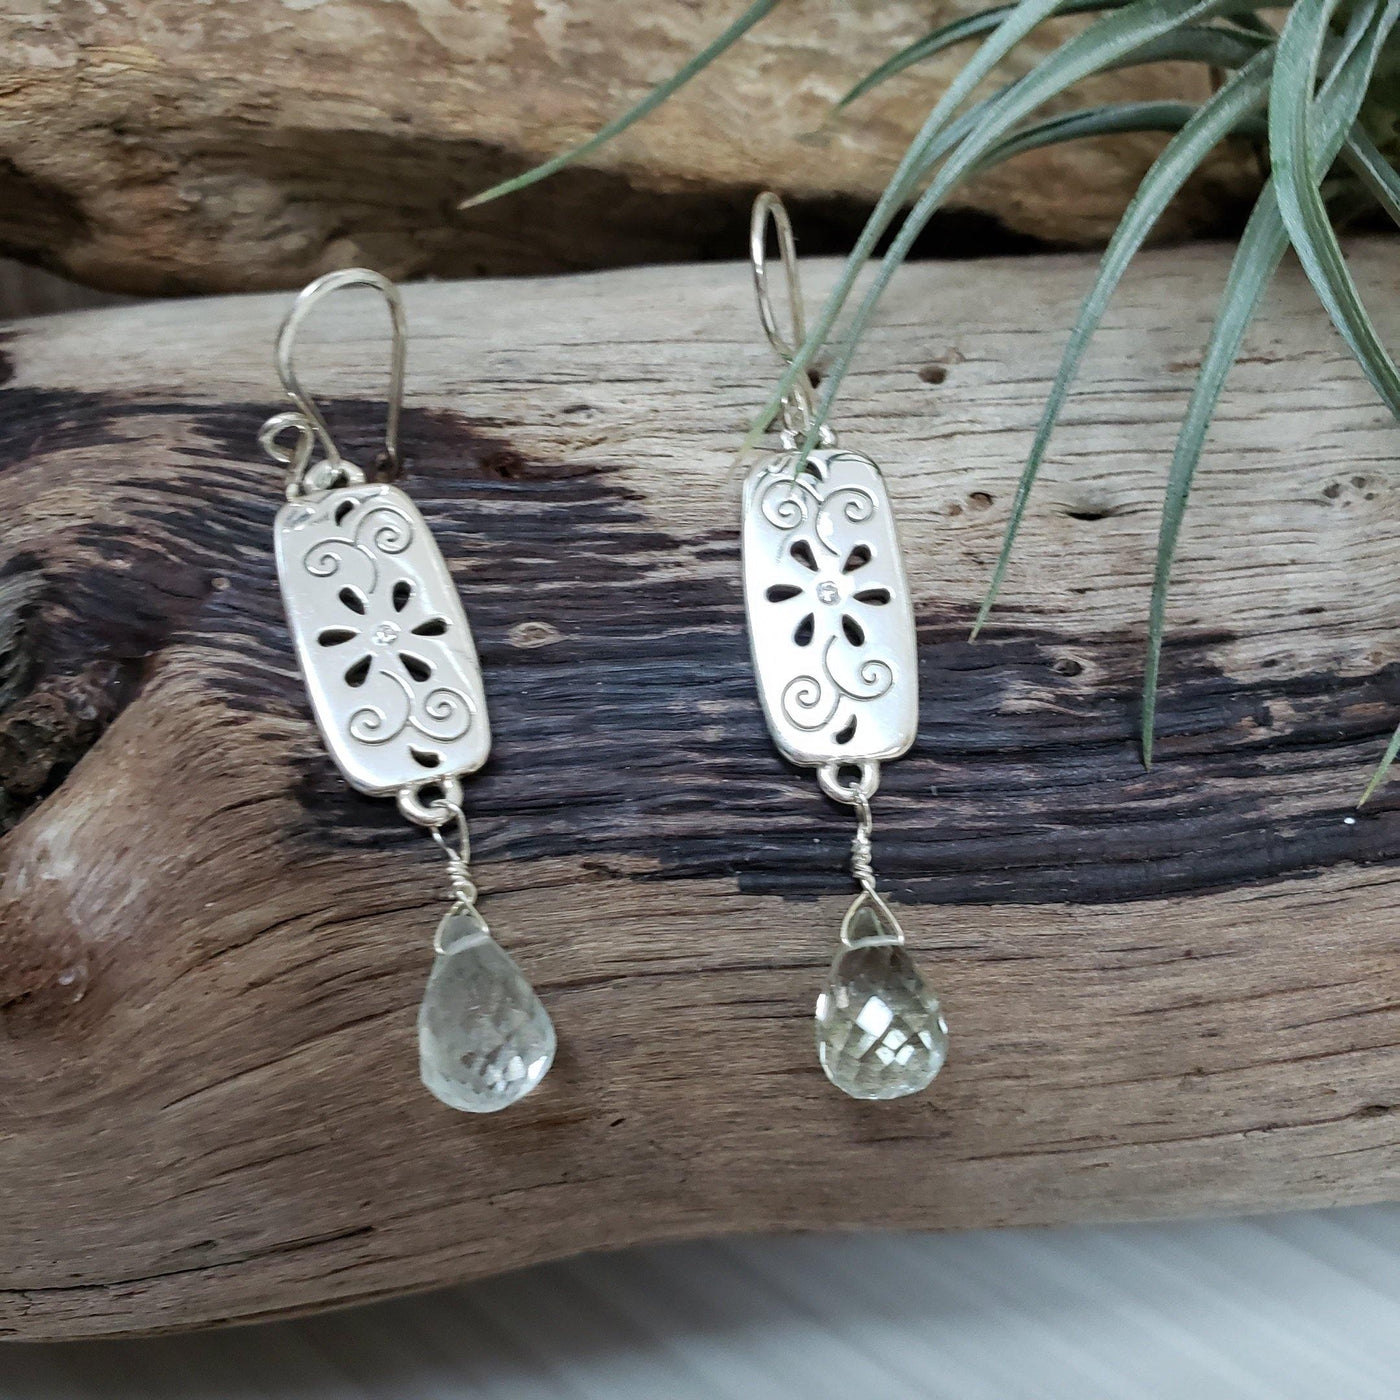 Green amethyst silver earrings - LB Designs